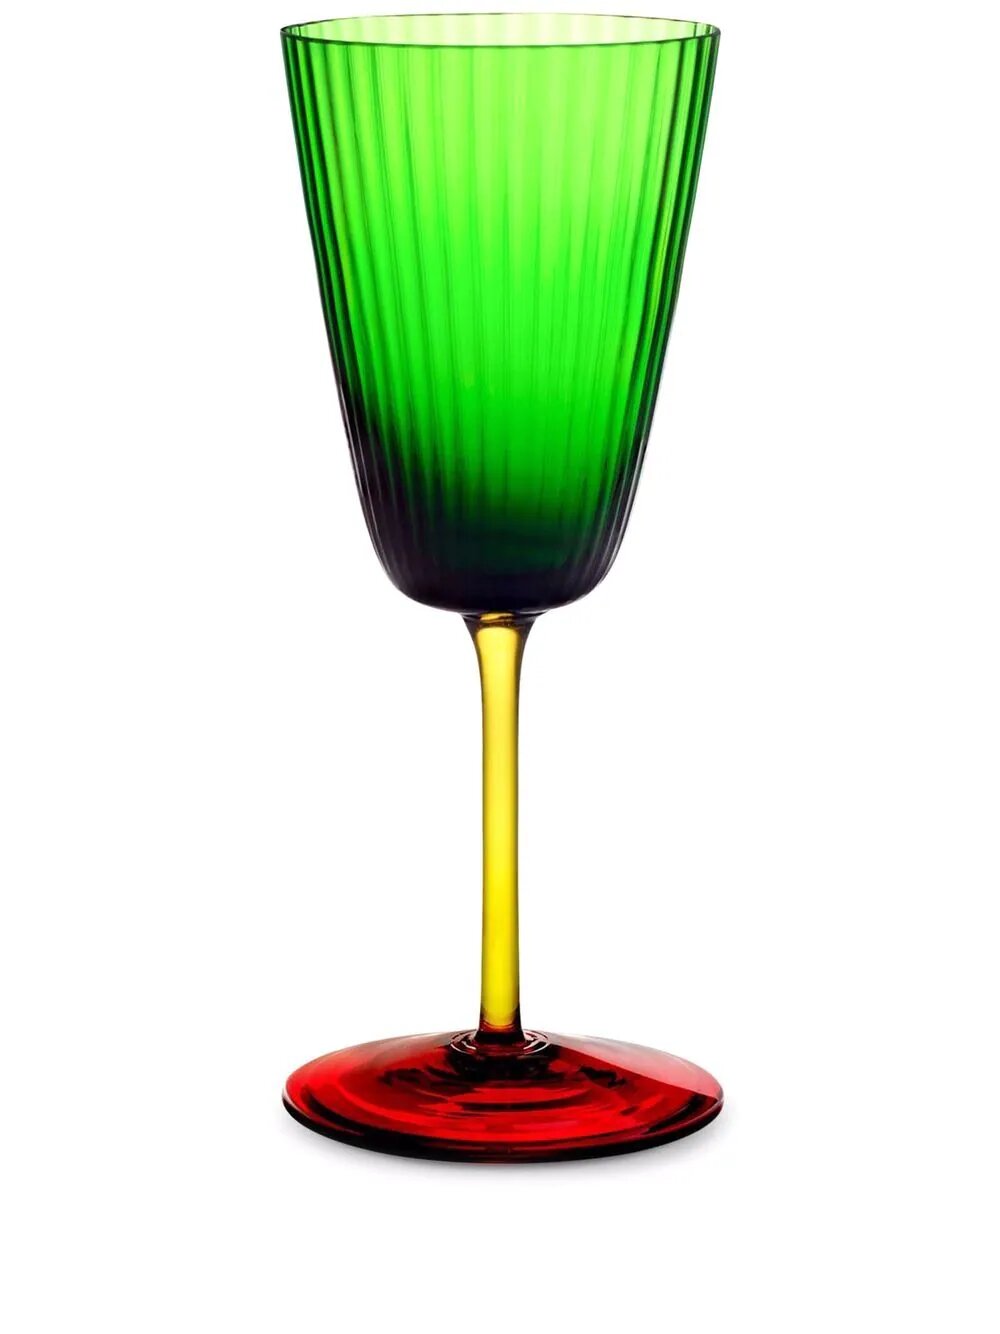 Бокал для вина в стиле колорблок Dolce amp Gabbana зеленый 33 423 руб.